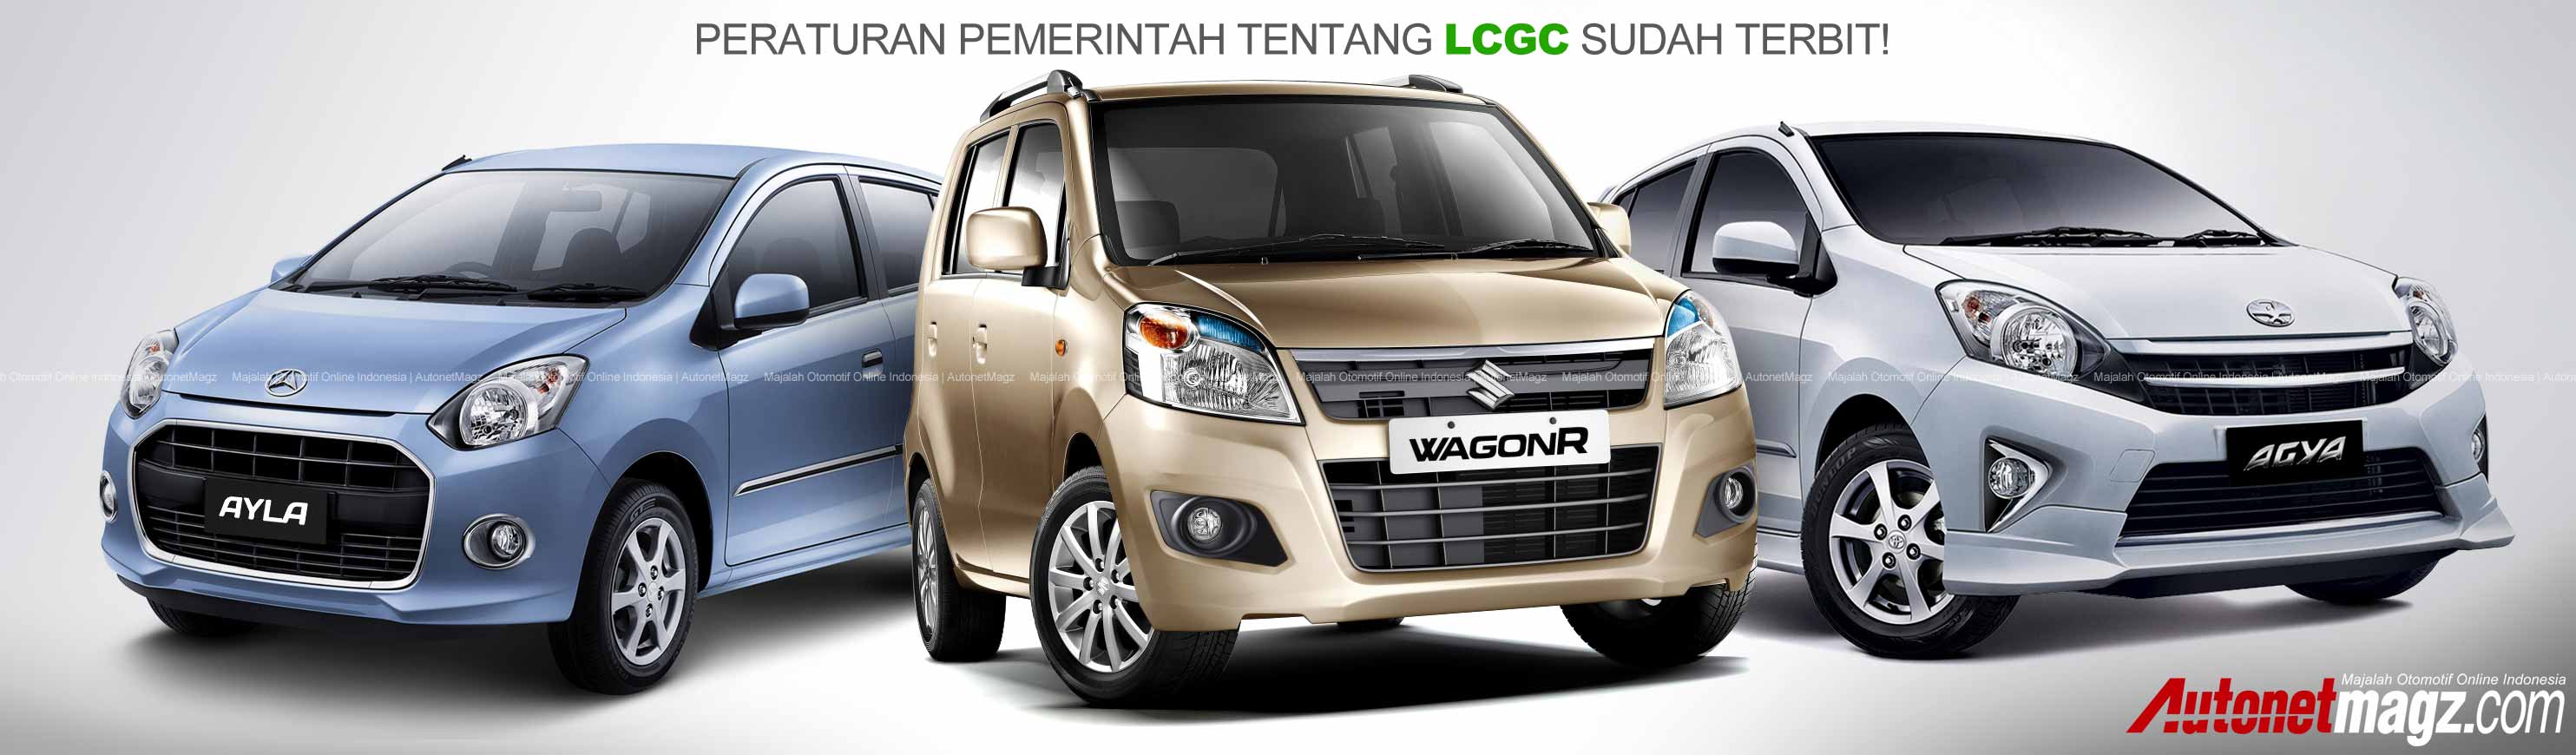 Berita, Mobil LCGC Indonesia: Peraturan Pemerintah Mengenai Mobil Murah LCGC Telah Resmi Terbit!